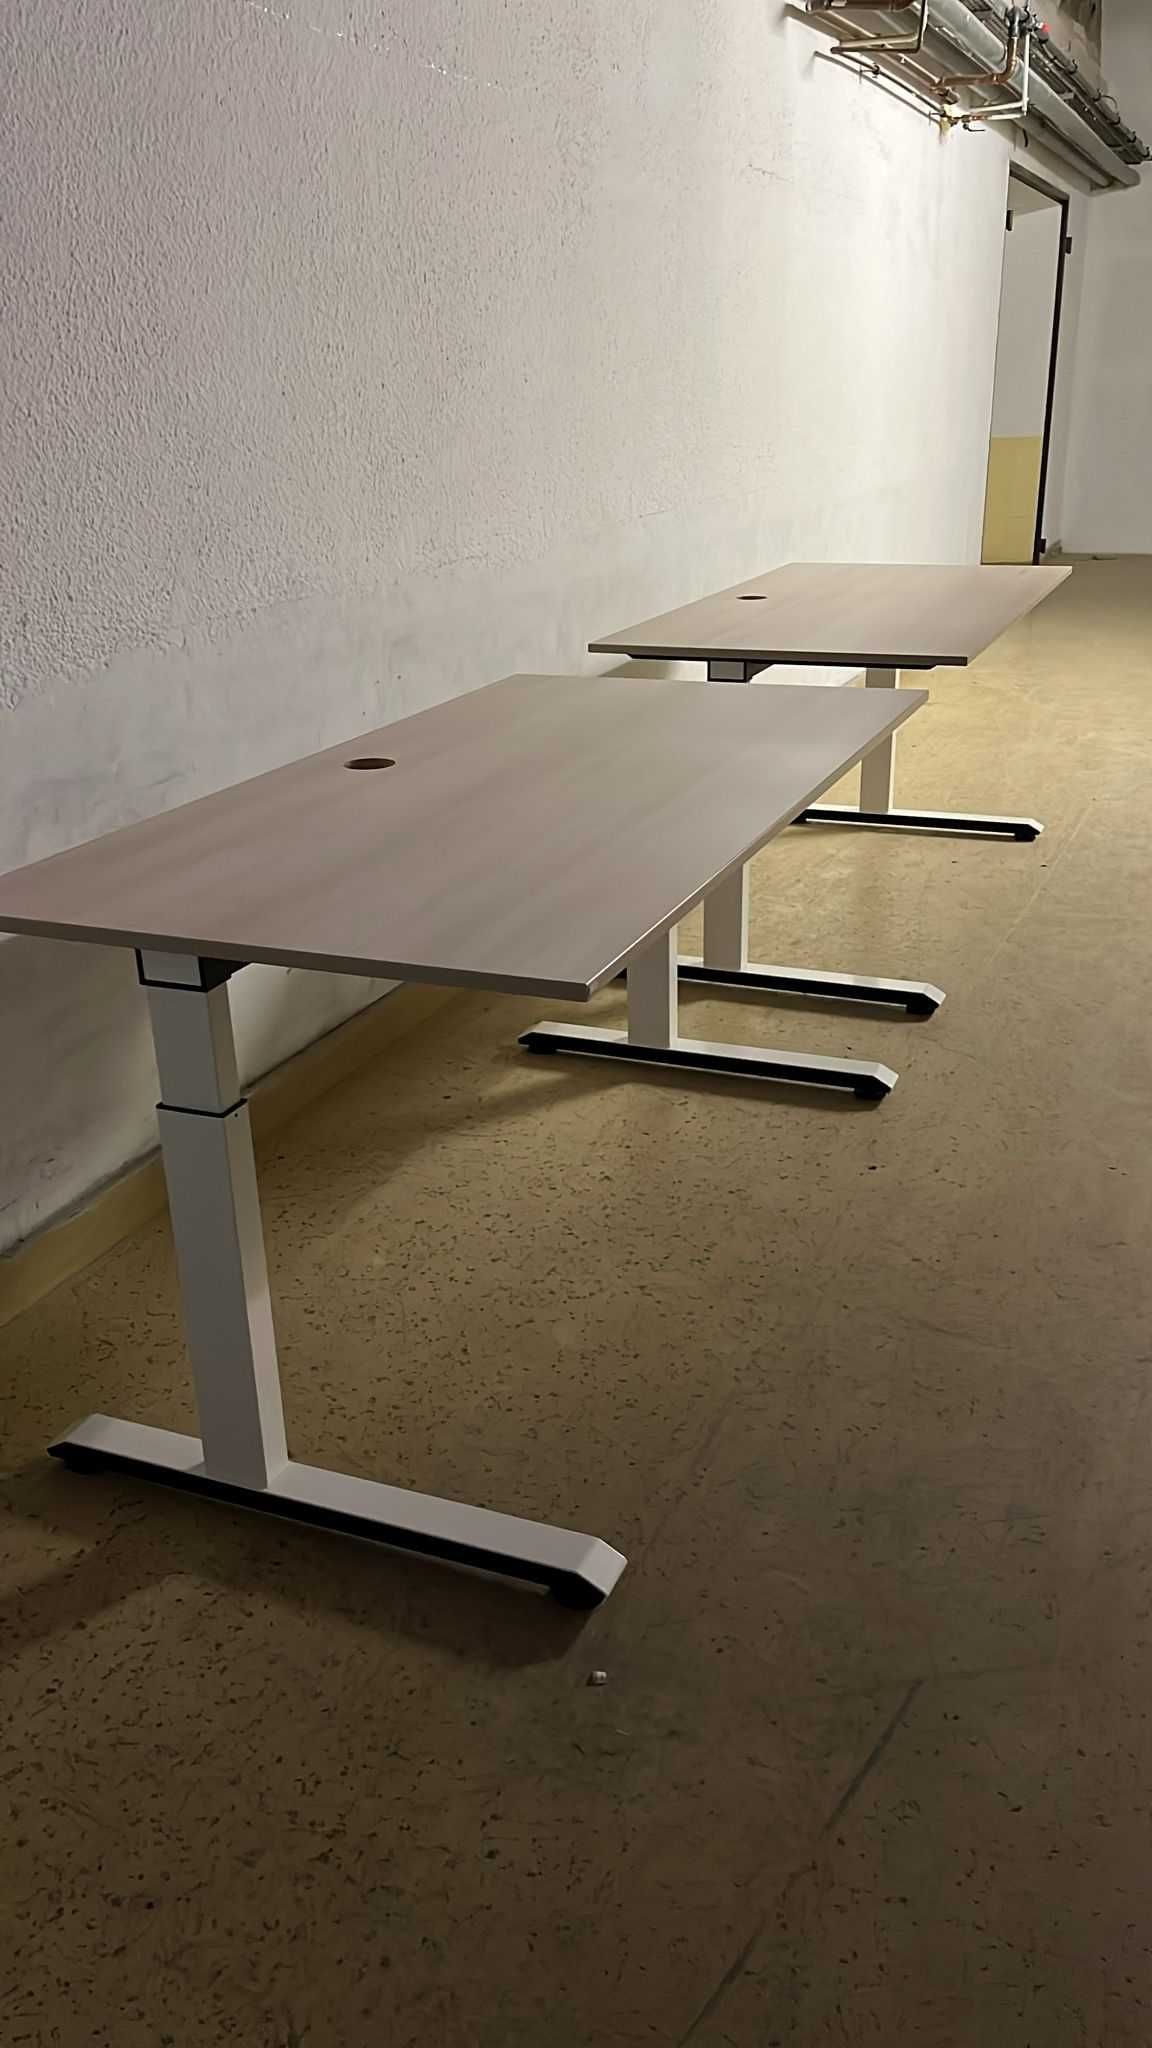 стіл з регулюванням висоти Sedus Temptation C Germany 160 x 80см. опт.